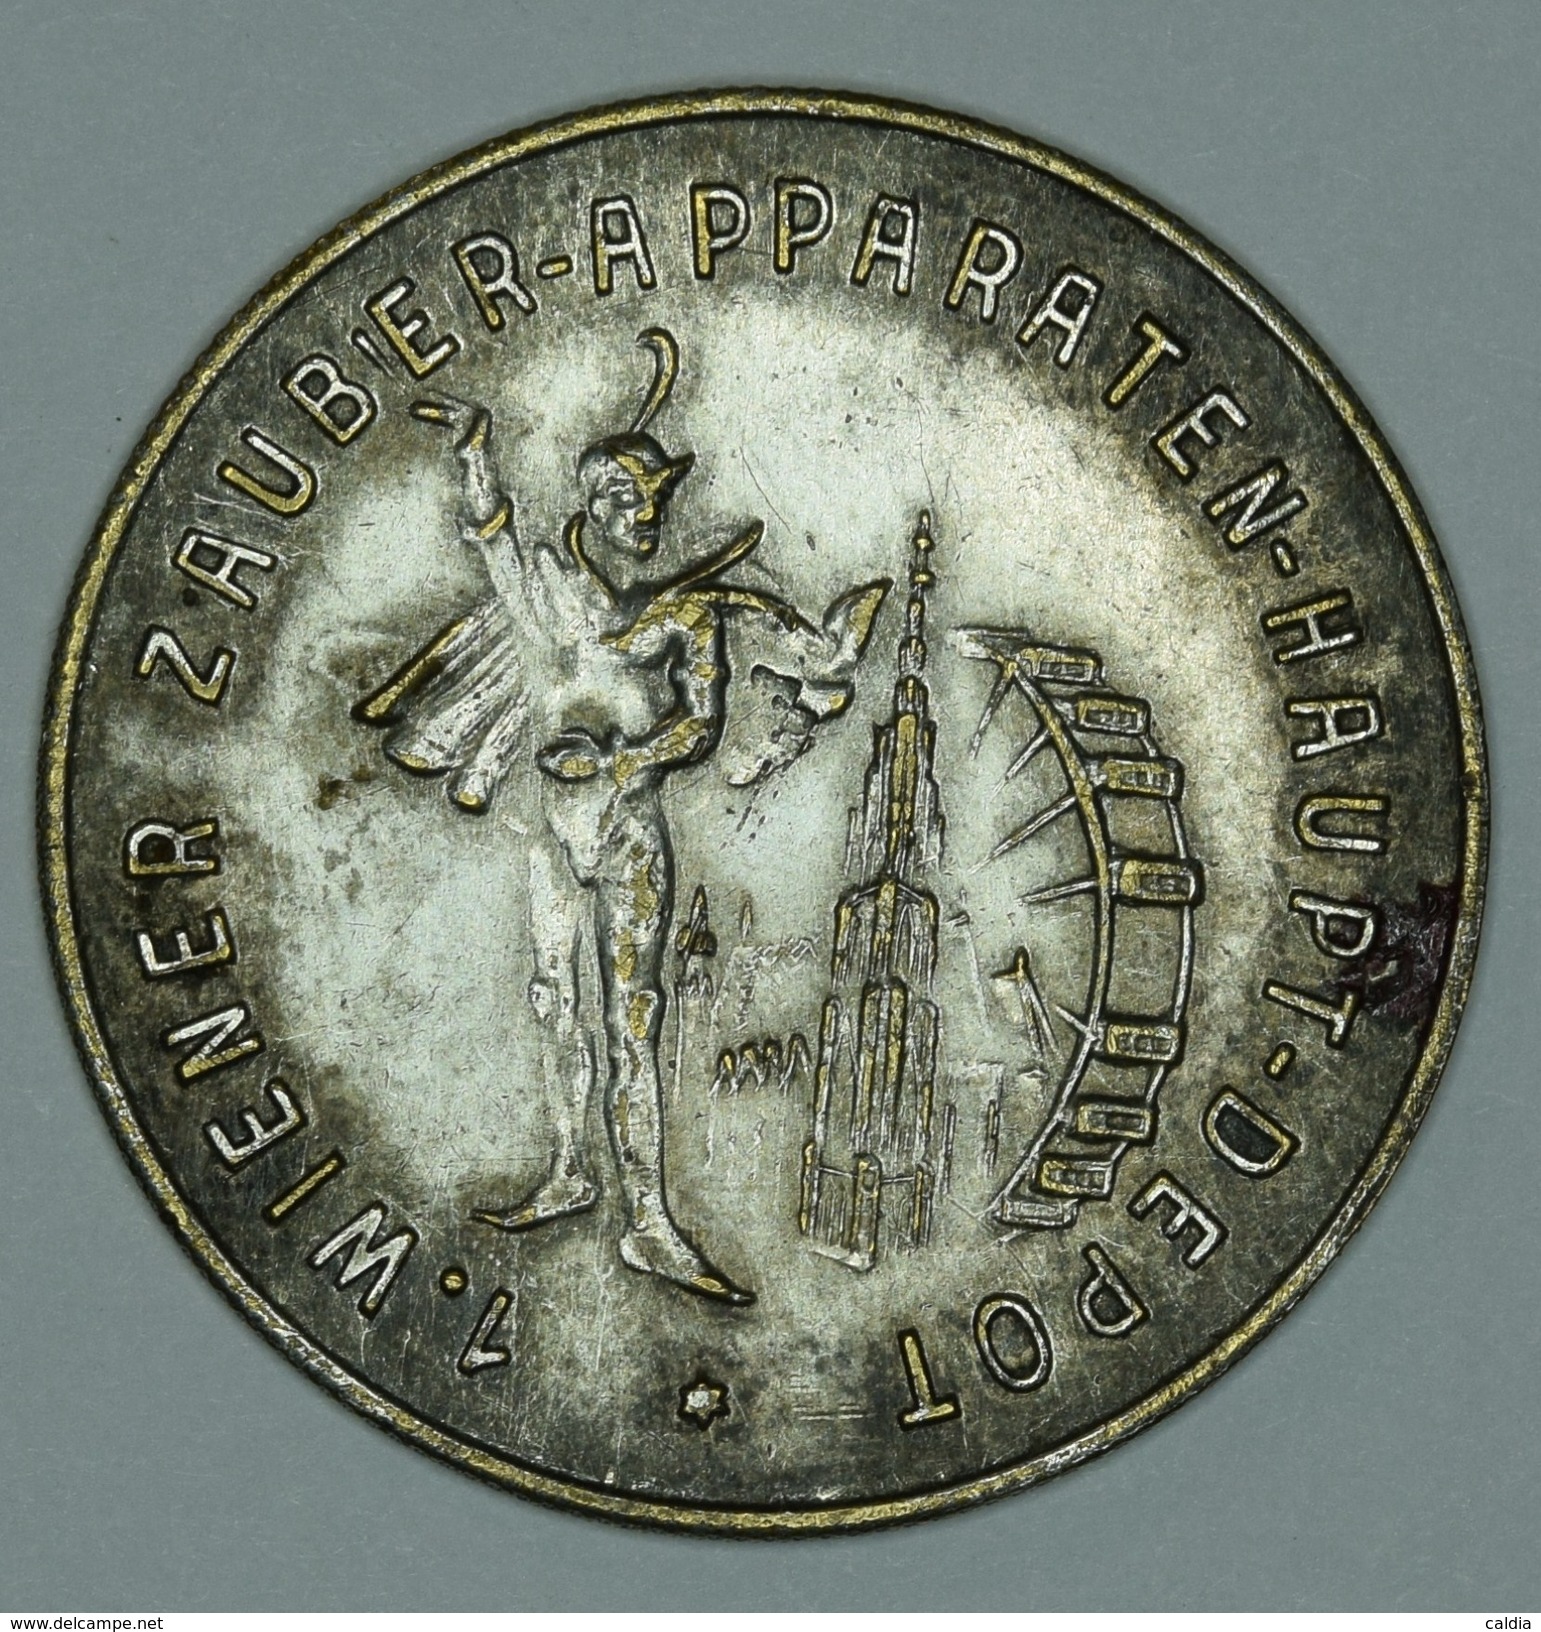 Autriche Austria Österreich 1867 " Wiener Zauber - Apparaten - Haupt - Depot "  Medal - Before 1871